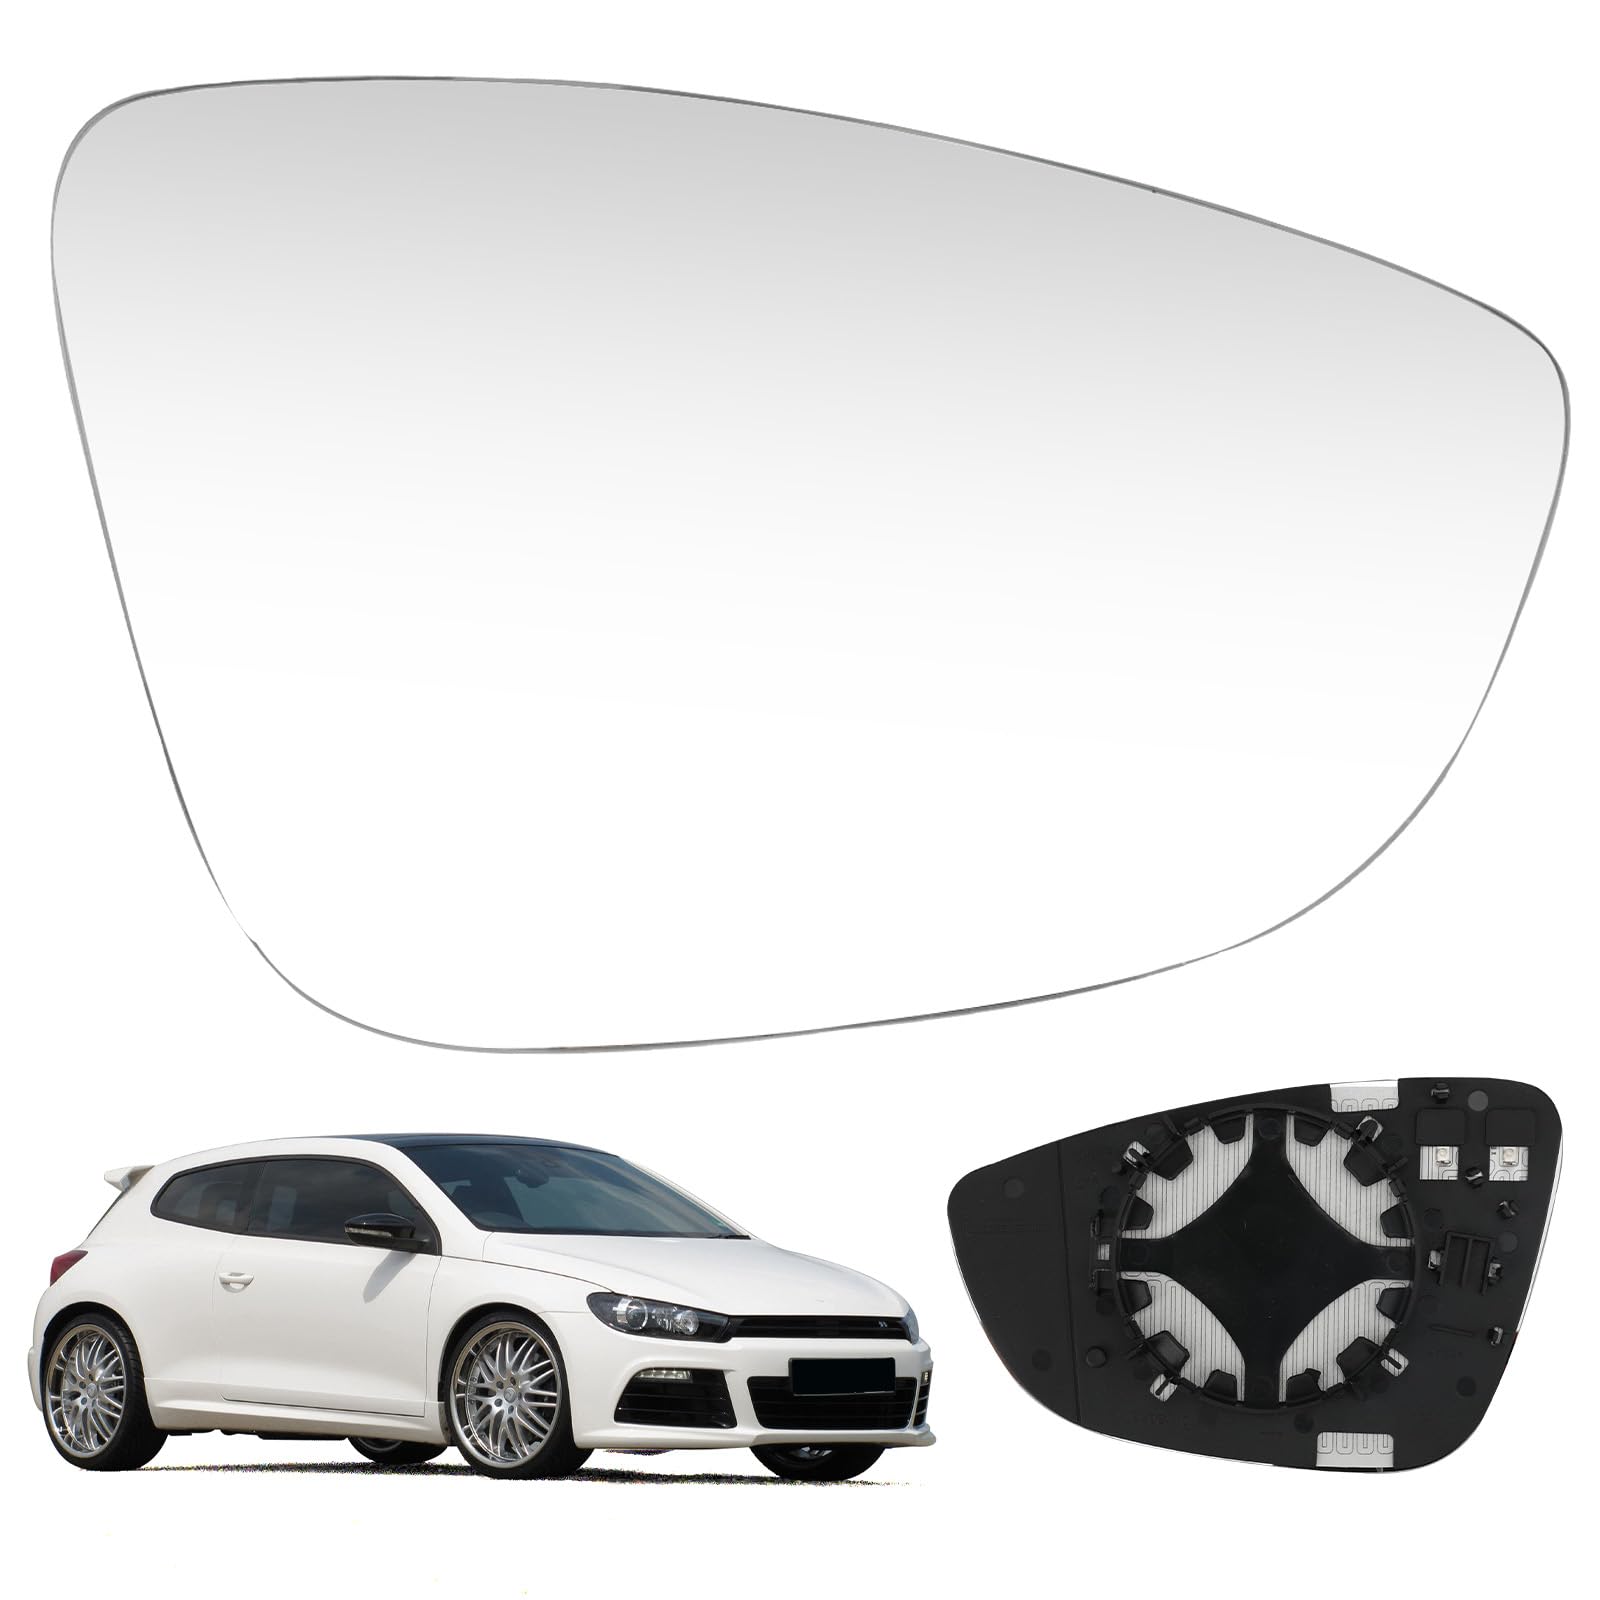 Spiegelglas kompatibel mit VW Scirocco MK3 2008-2017, PASSAT B7 2010-2014, beheizte Flügelseite Glasspiegel Right von DriSubt